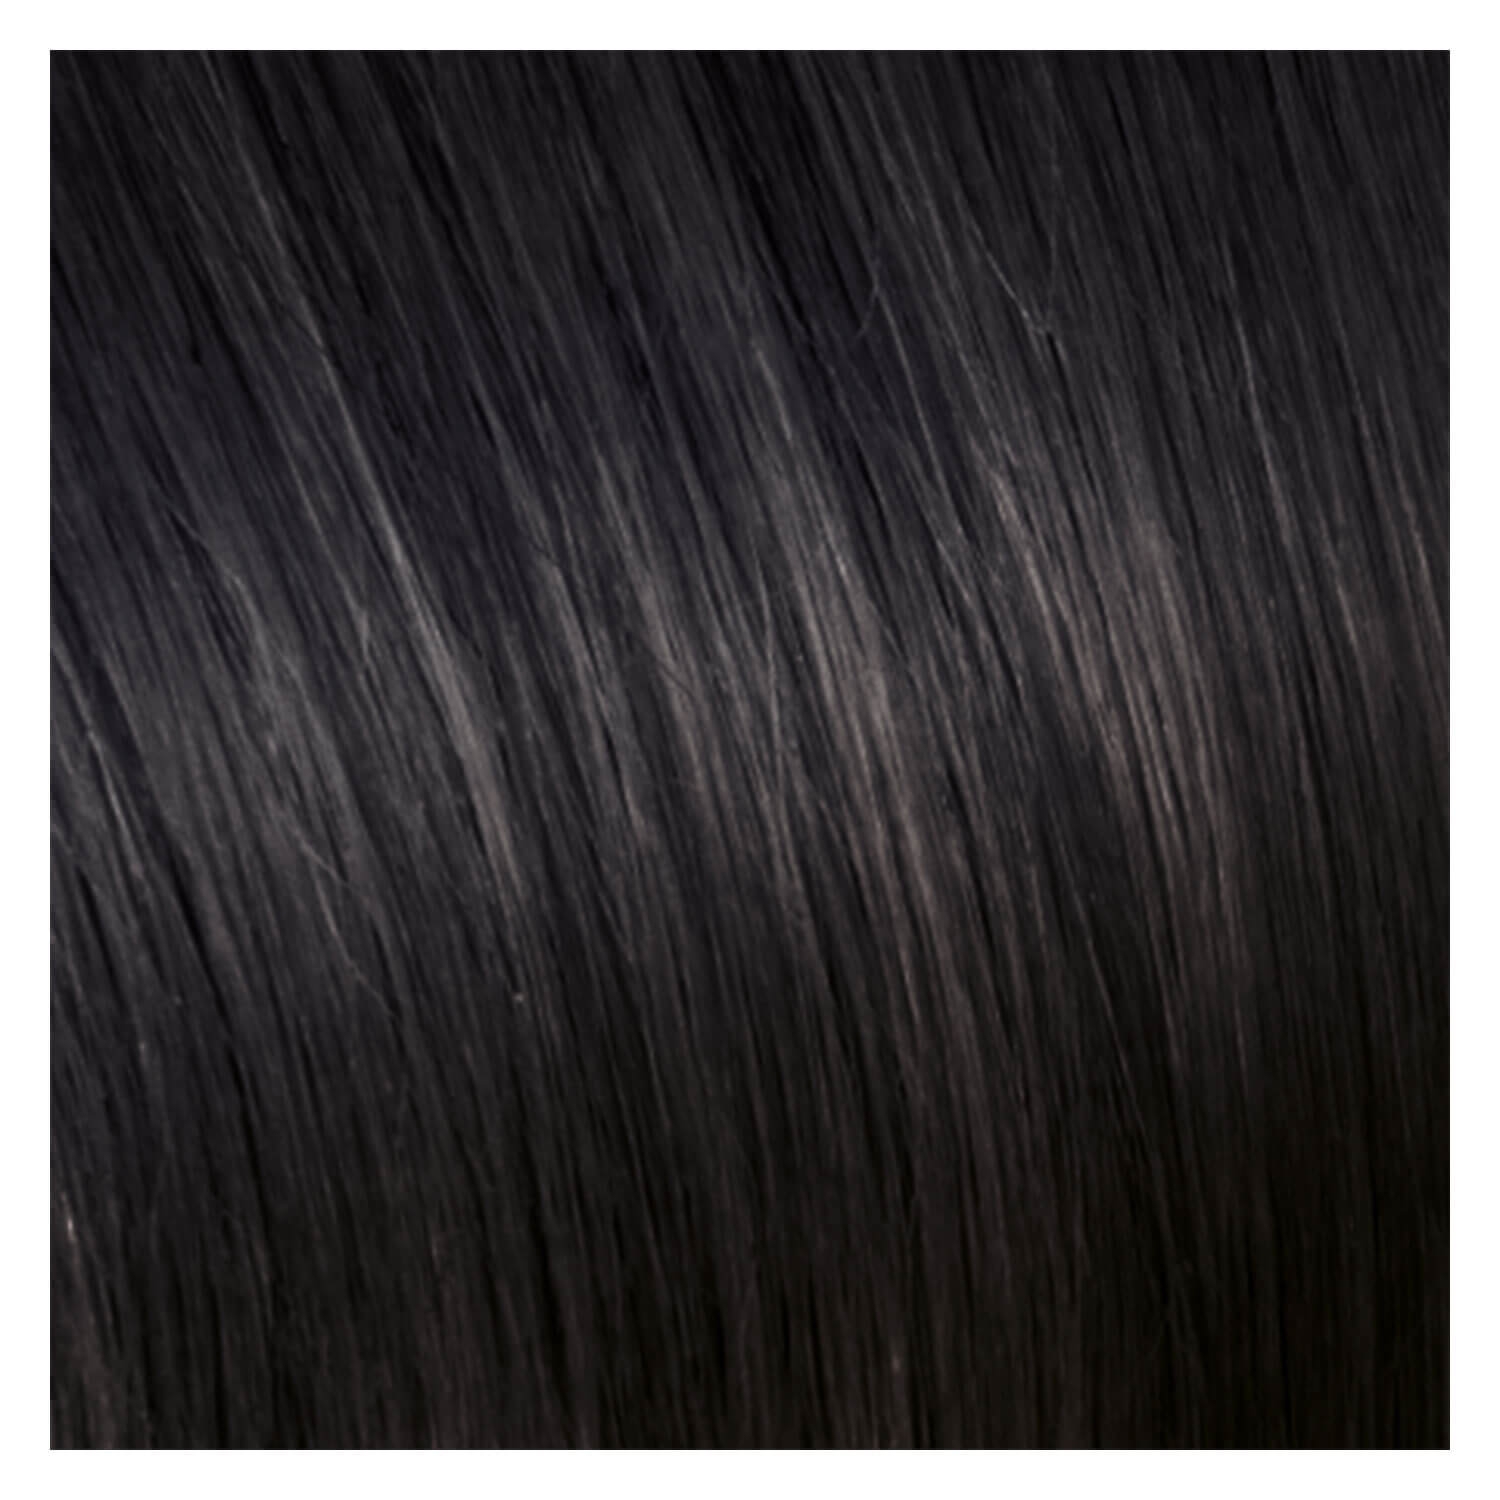 Produktbild von SHE Clip In-System Hair Extensions - 9-teiliges Set 1B Schwarz 50/55cm